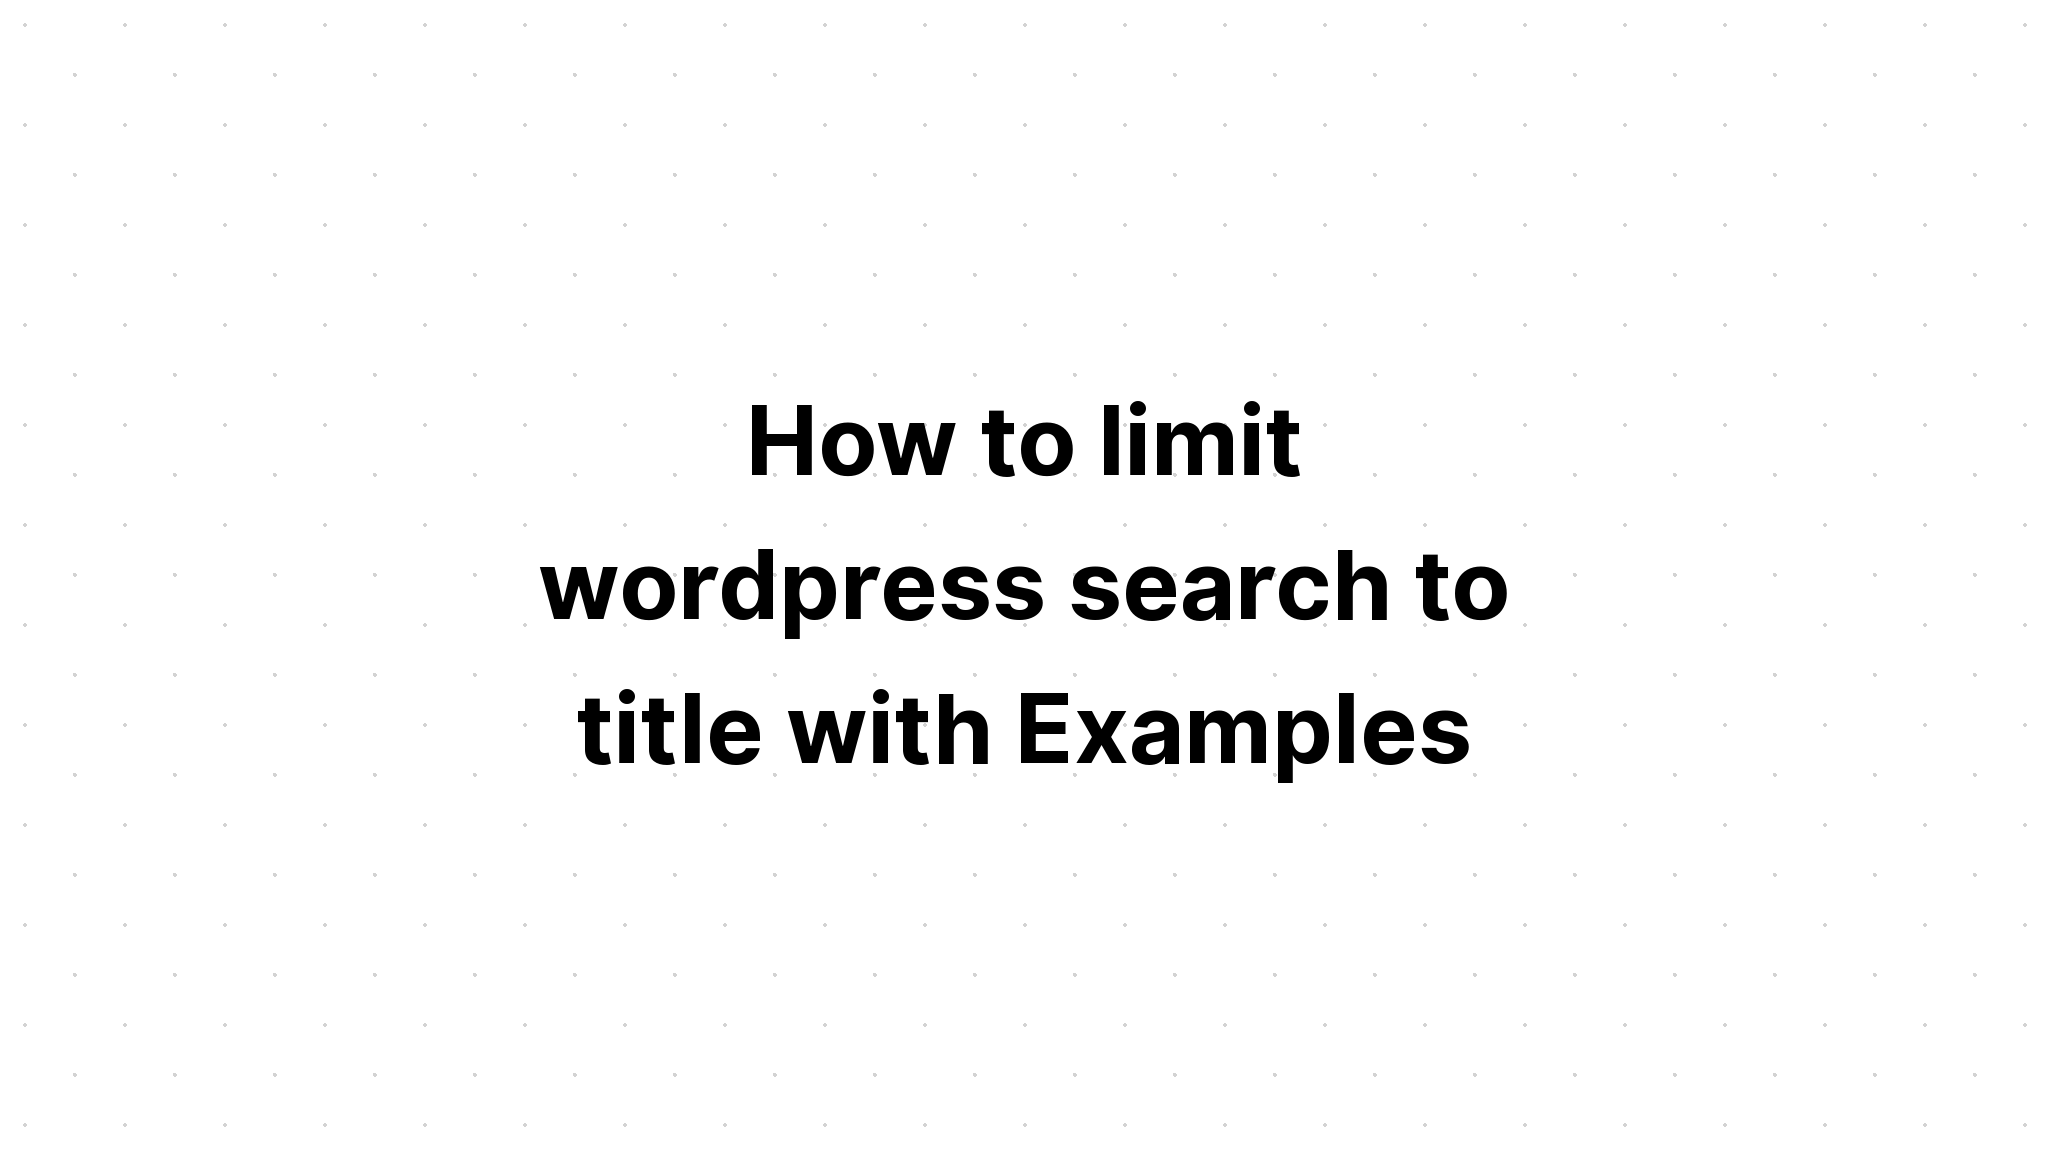 Cách giới hạn tìm kiếm wordpress theo tiêu đề với Ví dụ